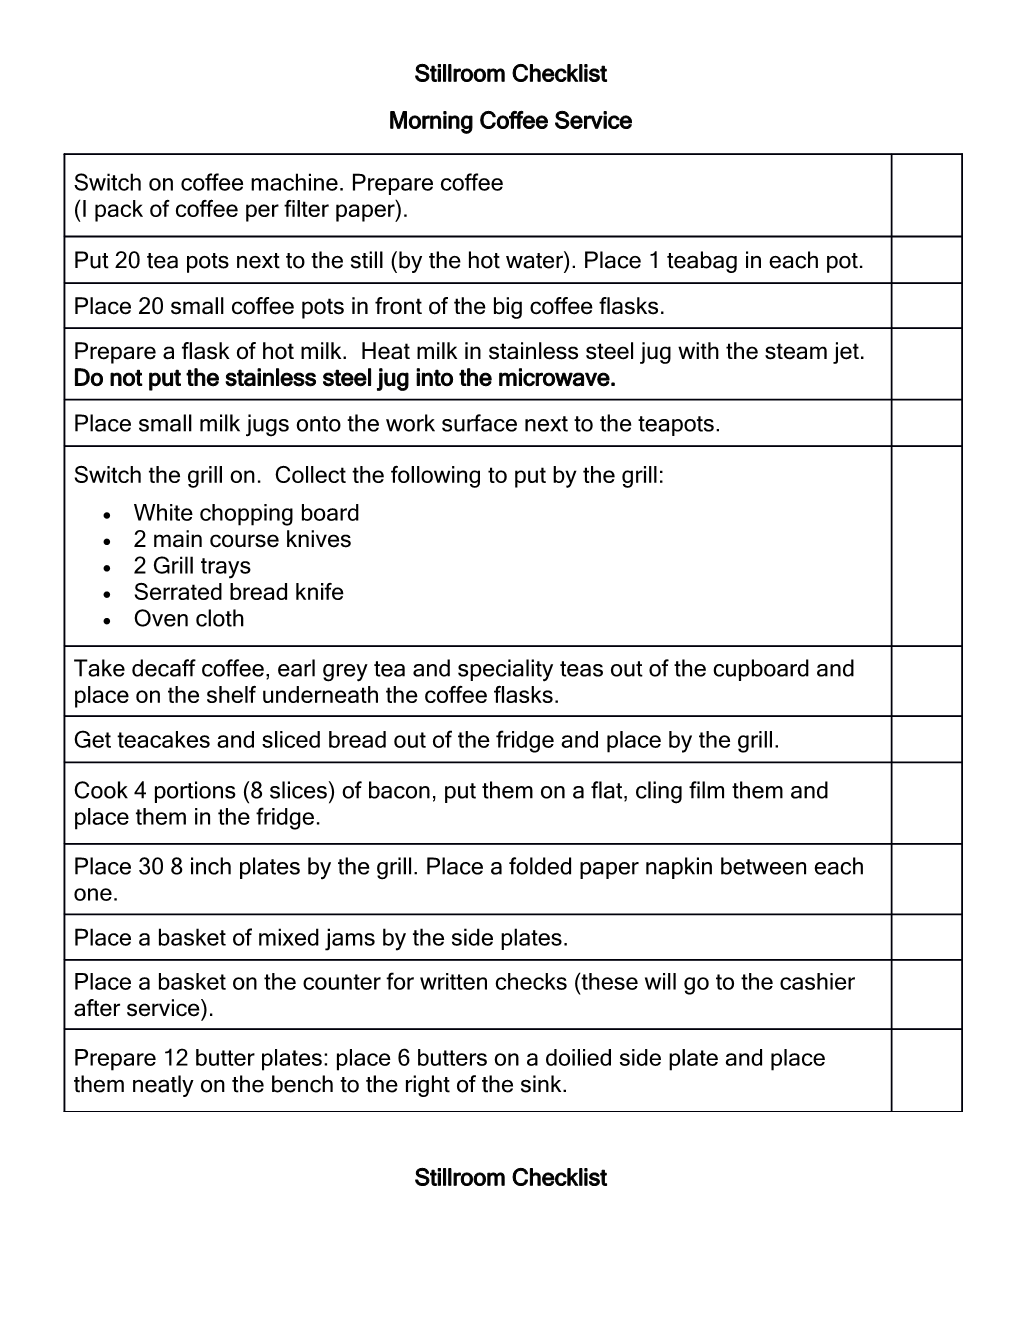 Stillroom Checklist